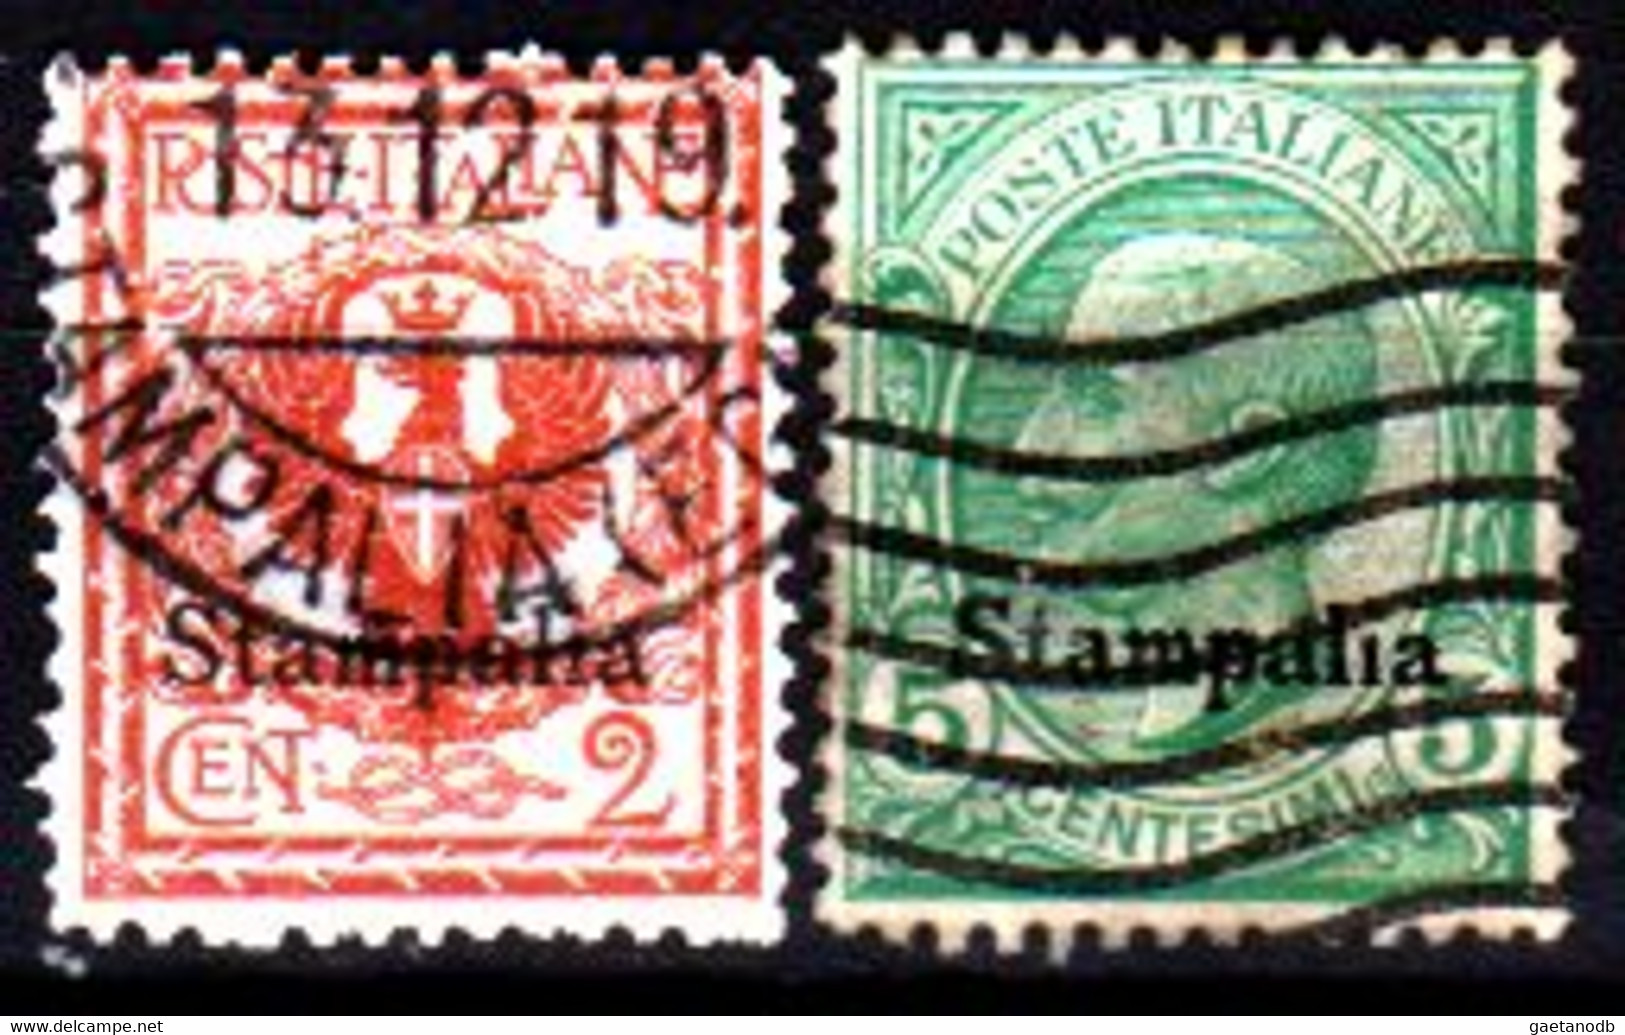 Italia-G 1151 - Colonie Italiane - Egeo: Stampalia 1912 (o) Used - Qualità A Vostro Giudizio. - Egée (Stampalia)